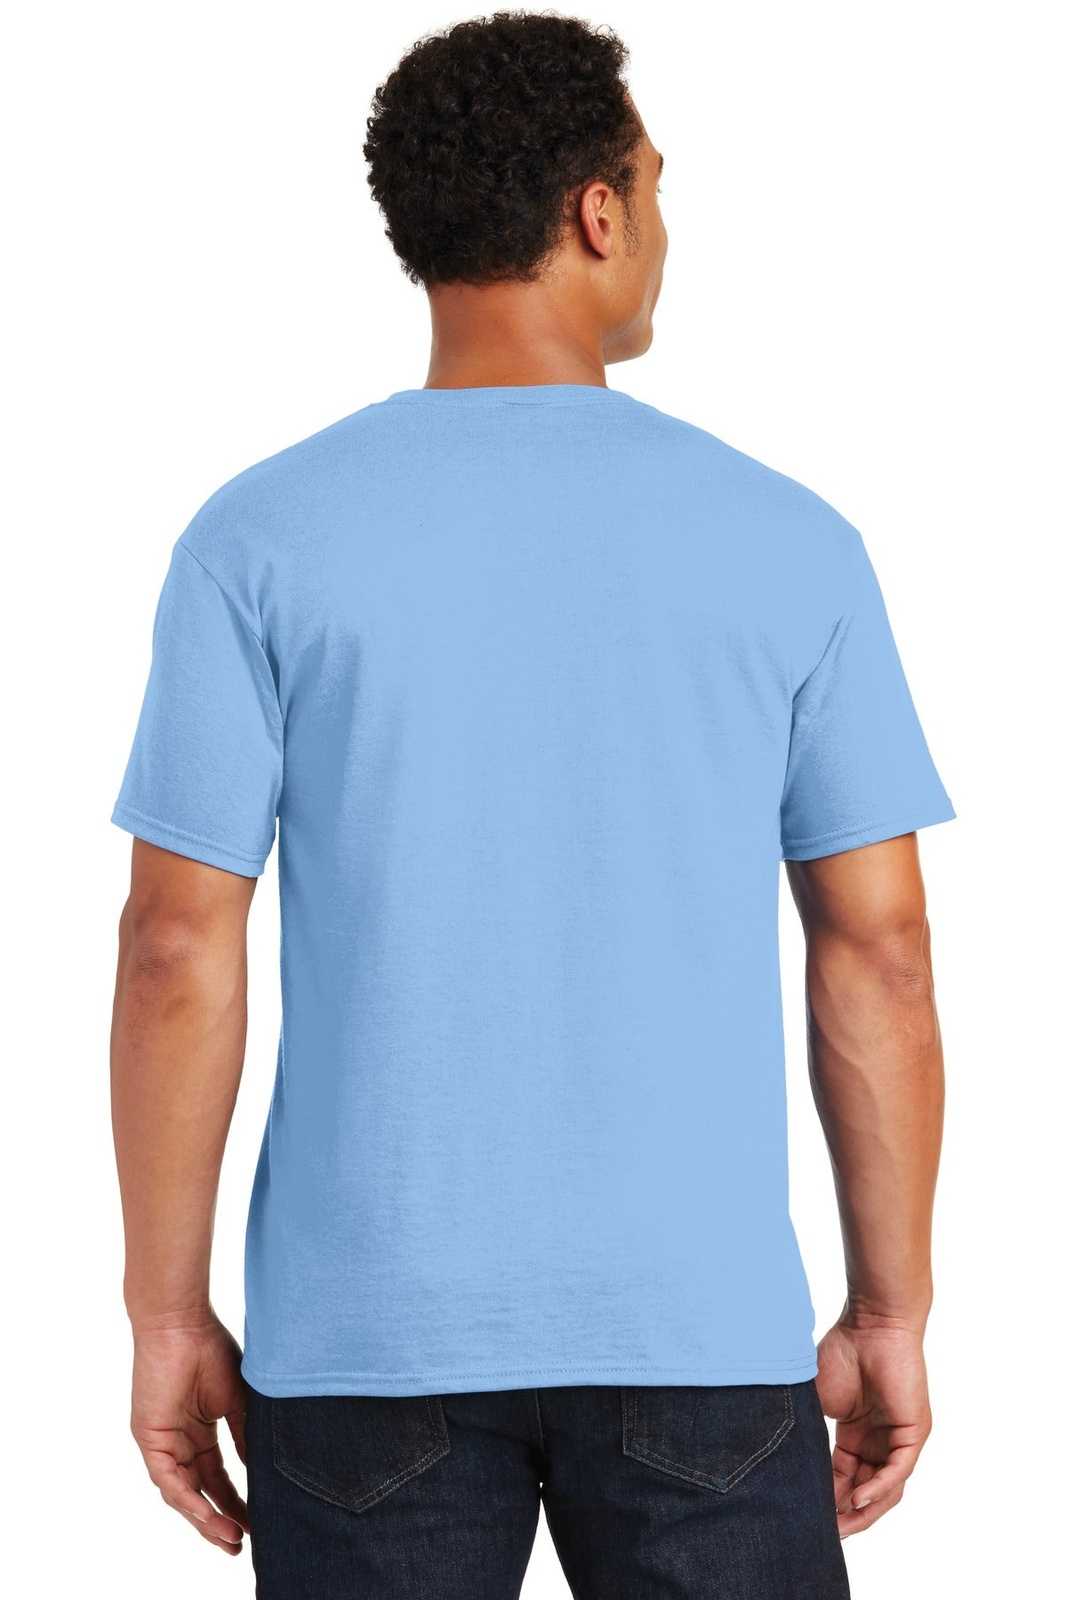 Jerzees 29M Dri-Power Active 50/50 Cotton/Poly T-Shirt - Light Blue - HIT a Double